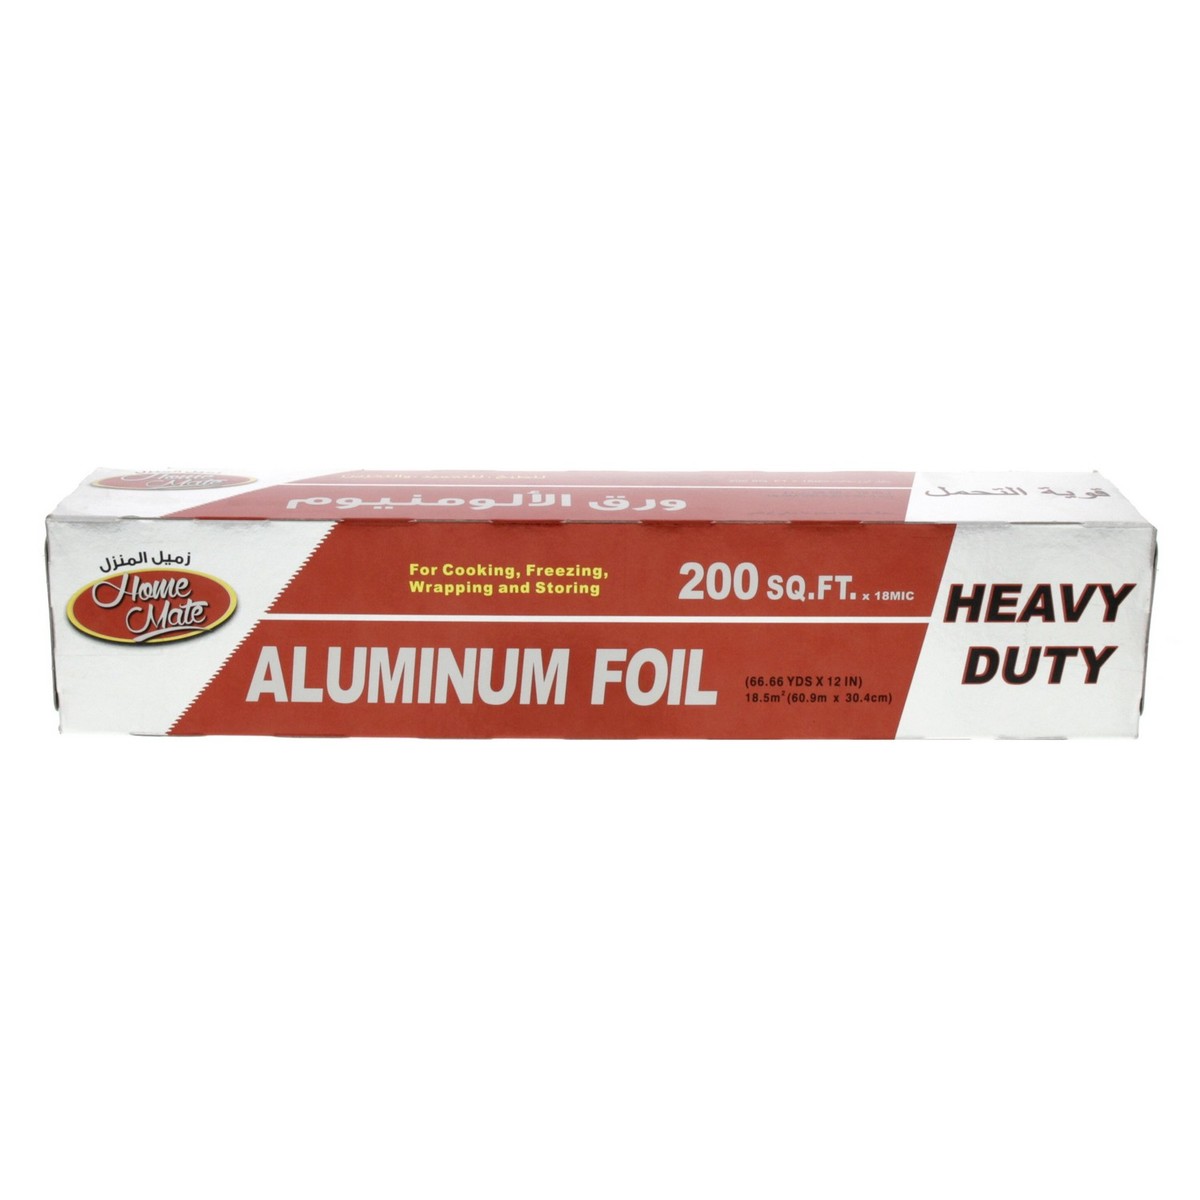 Home Mate Aluminum Foil 200sq.ft